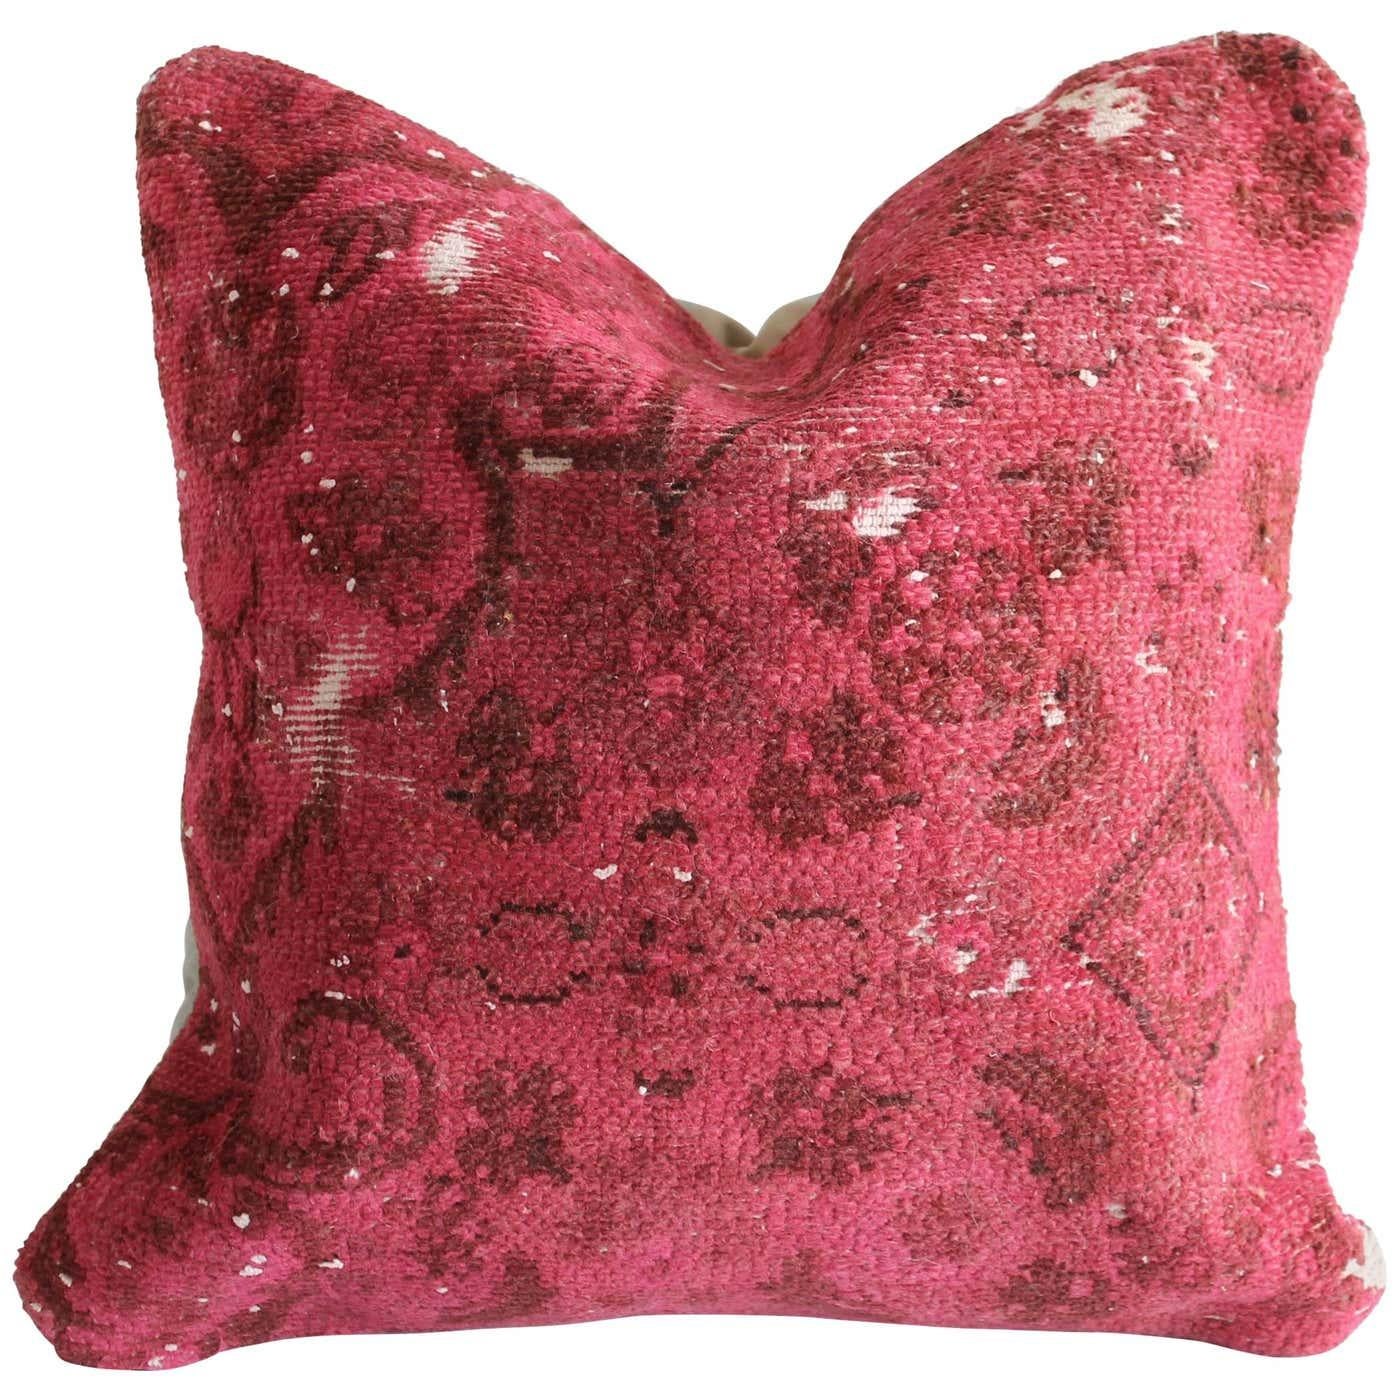 Vintage Türkischer Teppich Kissen
Ein leuchtendes dunkelrosa und rotes Kopfkissen mit Baumwollrücken.
Verschluss mit Reißverschluss.
Größe: 20 x 20.